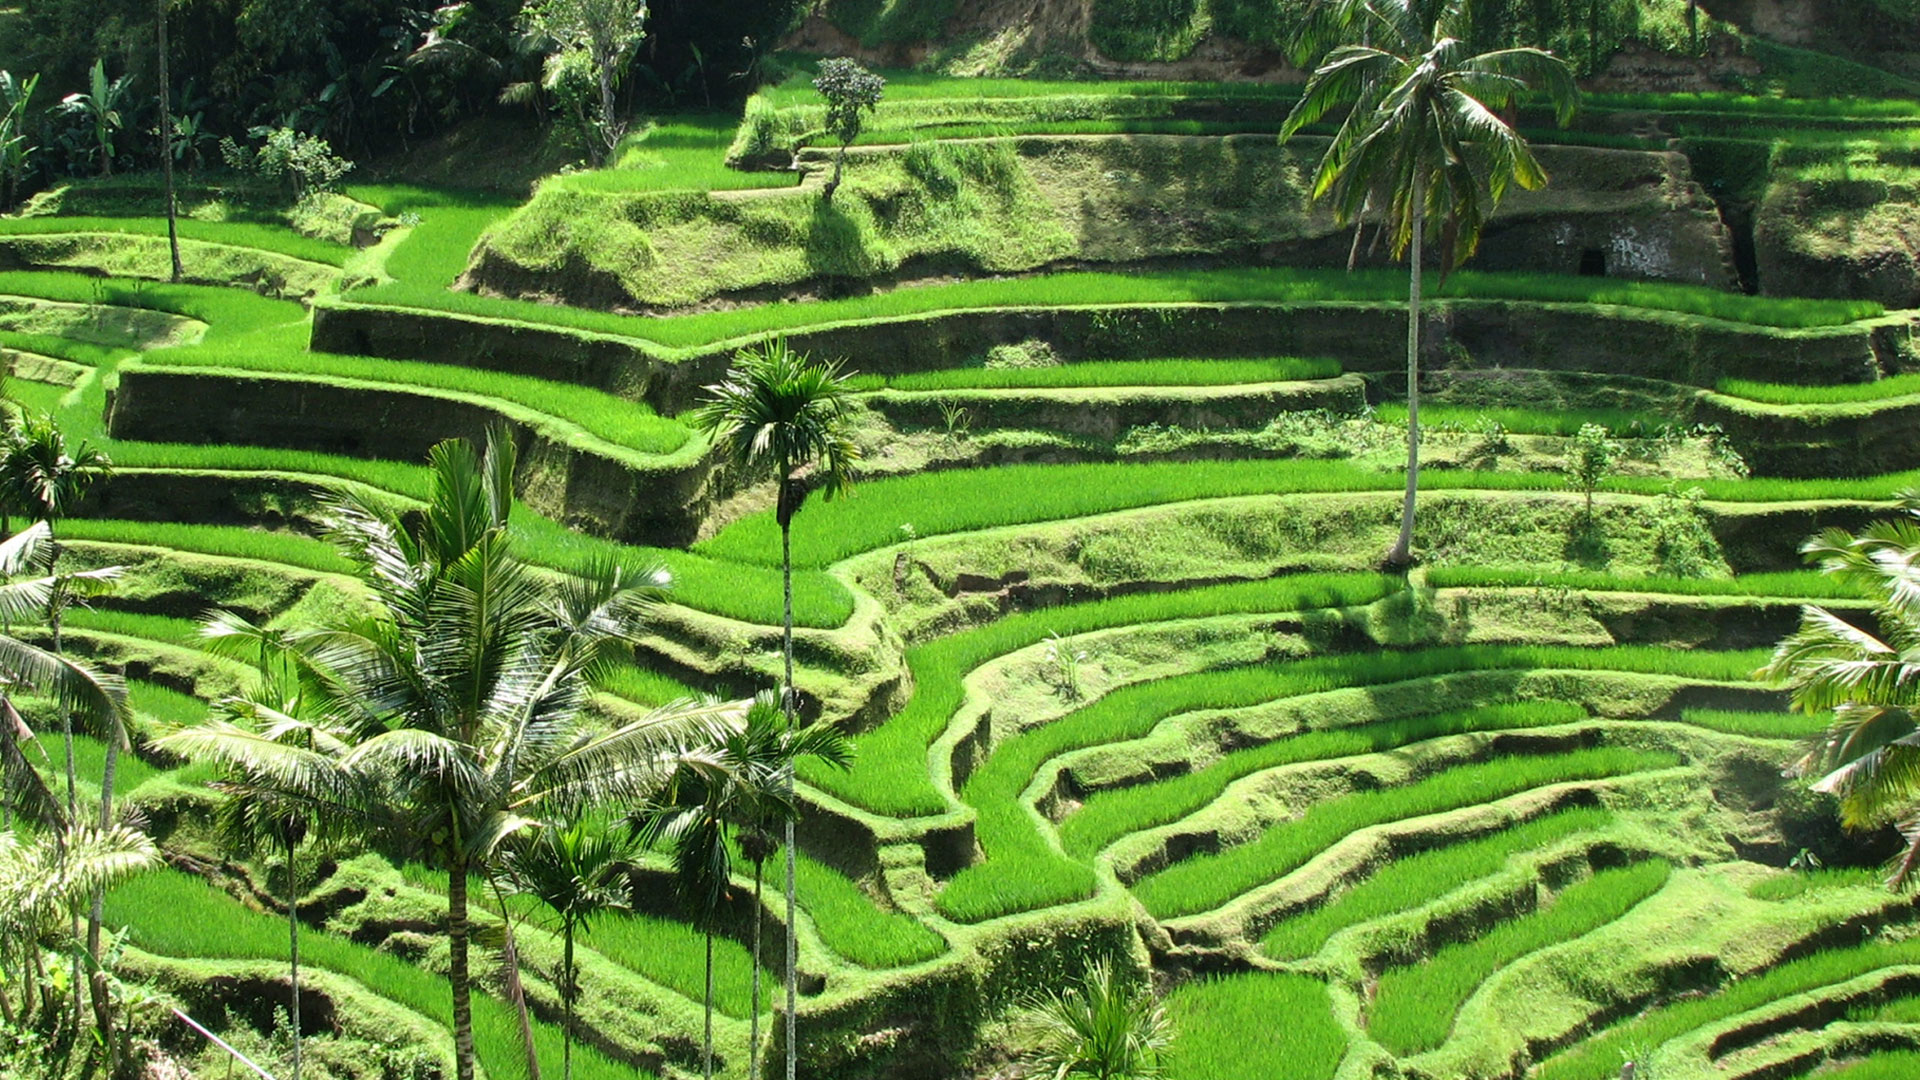 Là thị trấn trên đảo Bali, thuộc quận Ubud, nằm giữa những cánh đồng lúa và khe núi dốc đứng ở chân đồi trung tâm của huyện Gianyar, Indonesia. Ubud là địa điểm hút khách du lịch hàng đầu quốc gia Đông Nam Á này.